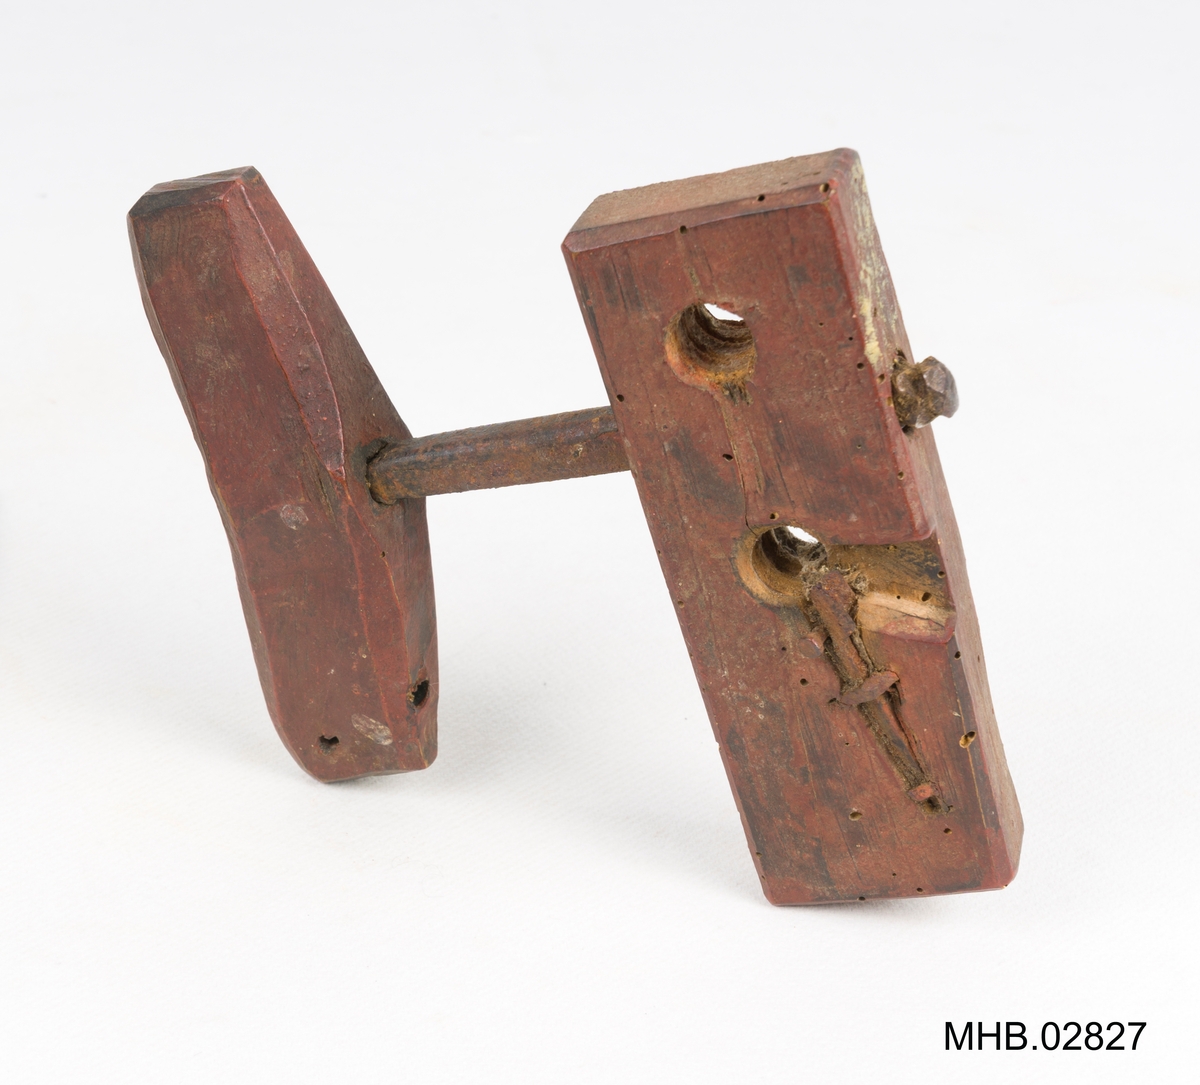 Snitt til å lage skruegjenger i tre.
Bestående av to deler; en treklosse med 3 hull og et håndtak med jernbor.